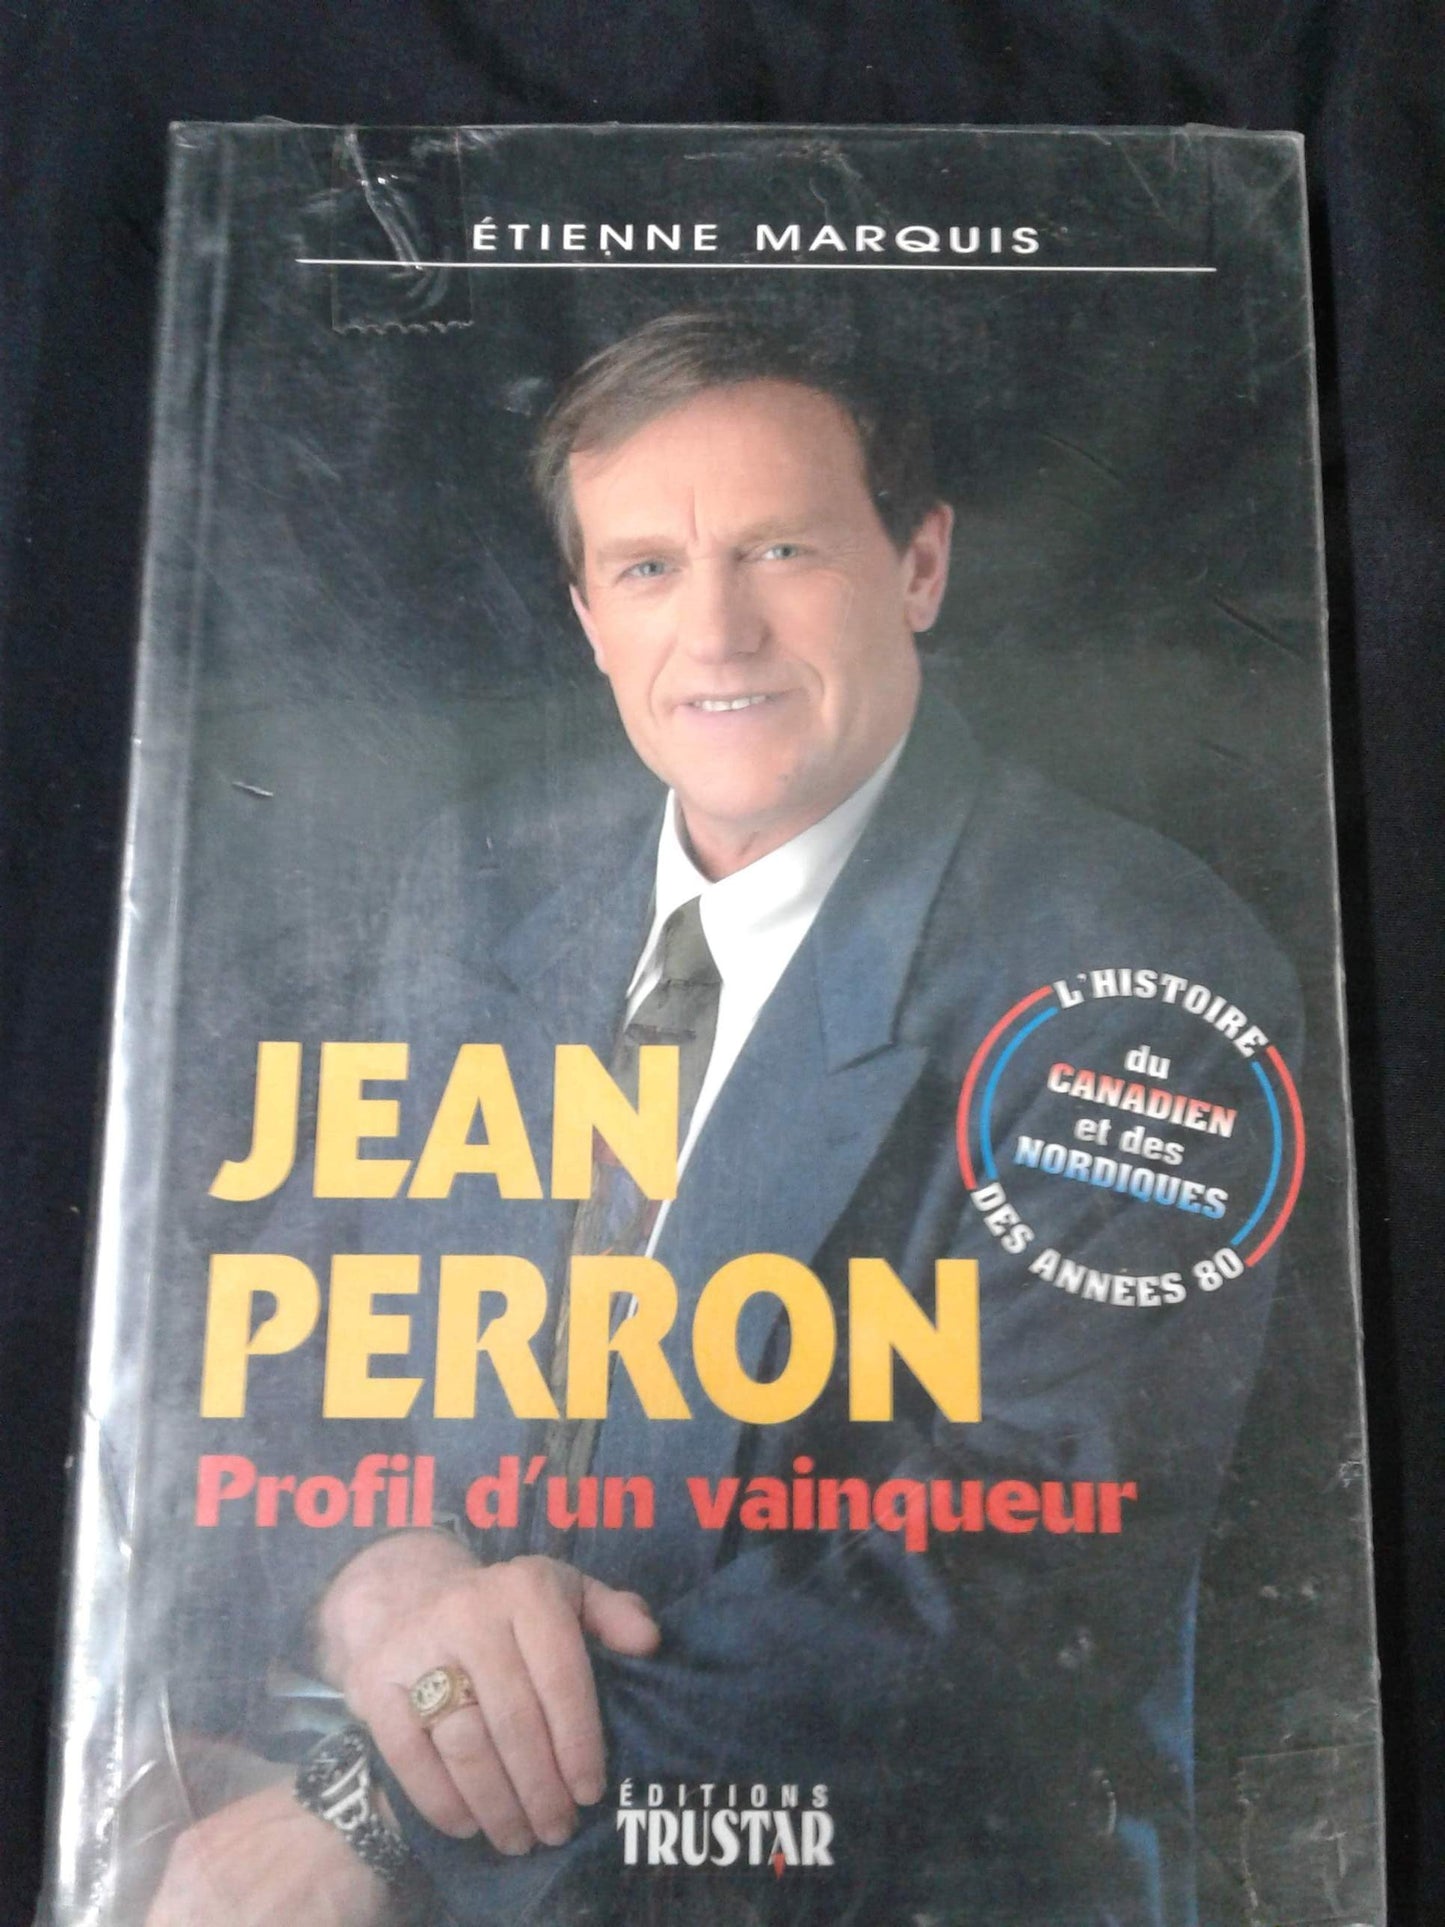 Jean Perron profil d'un vainqueur